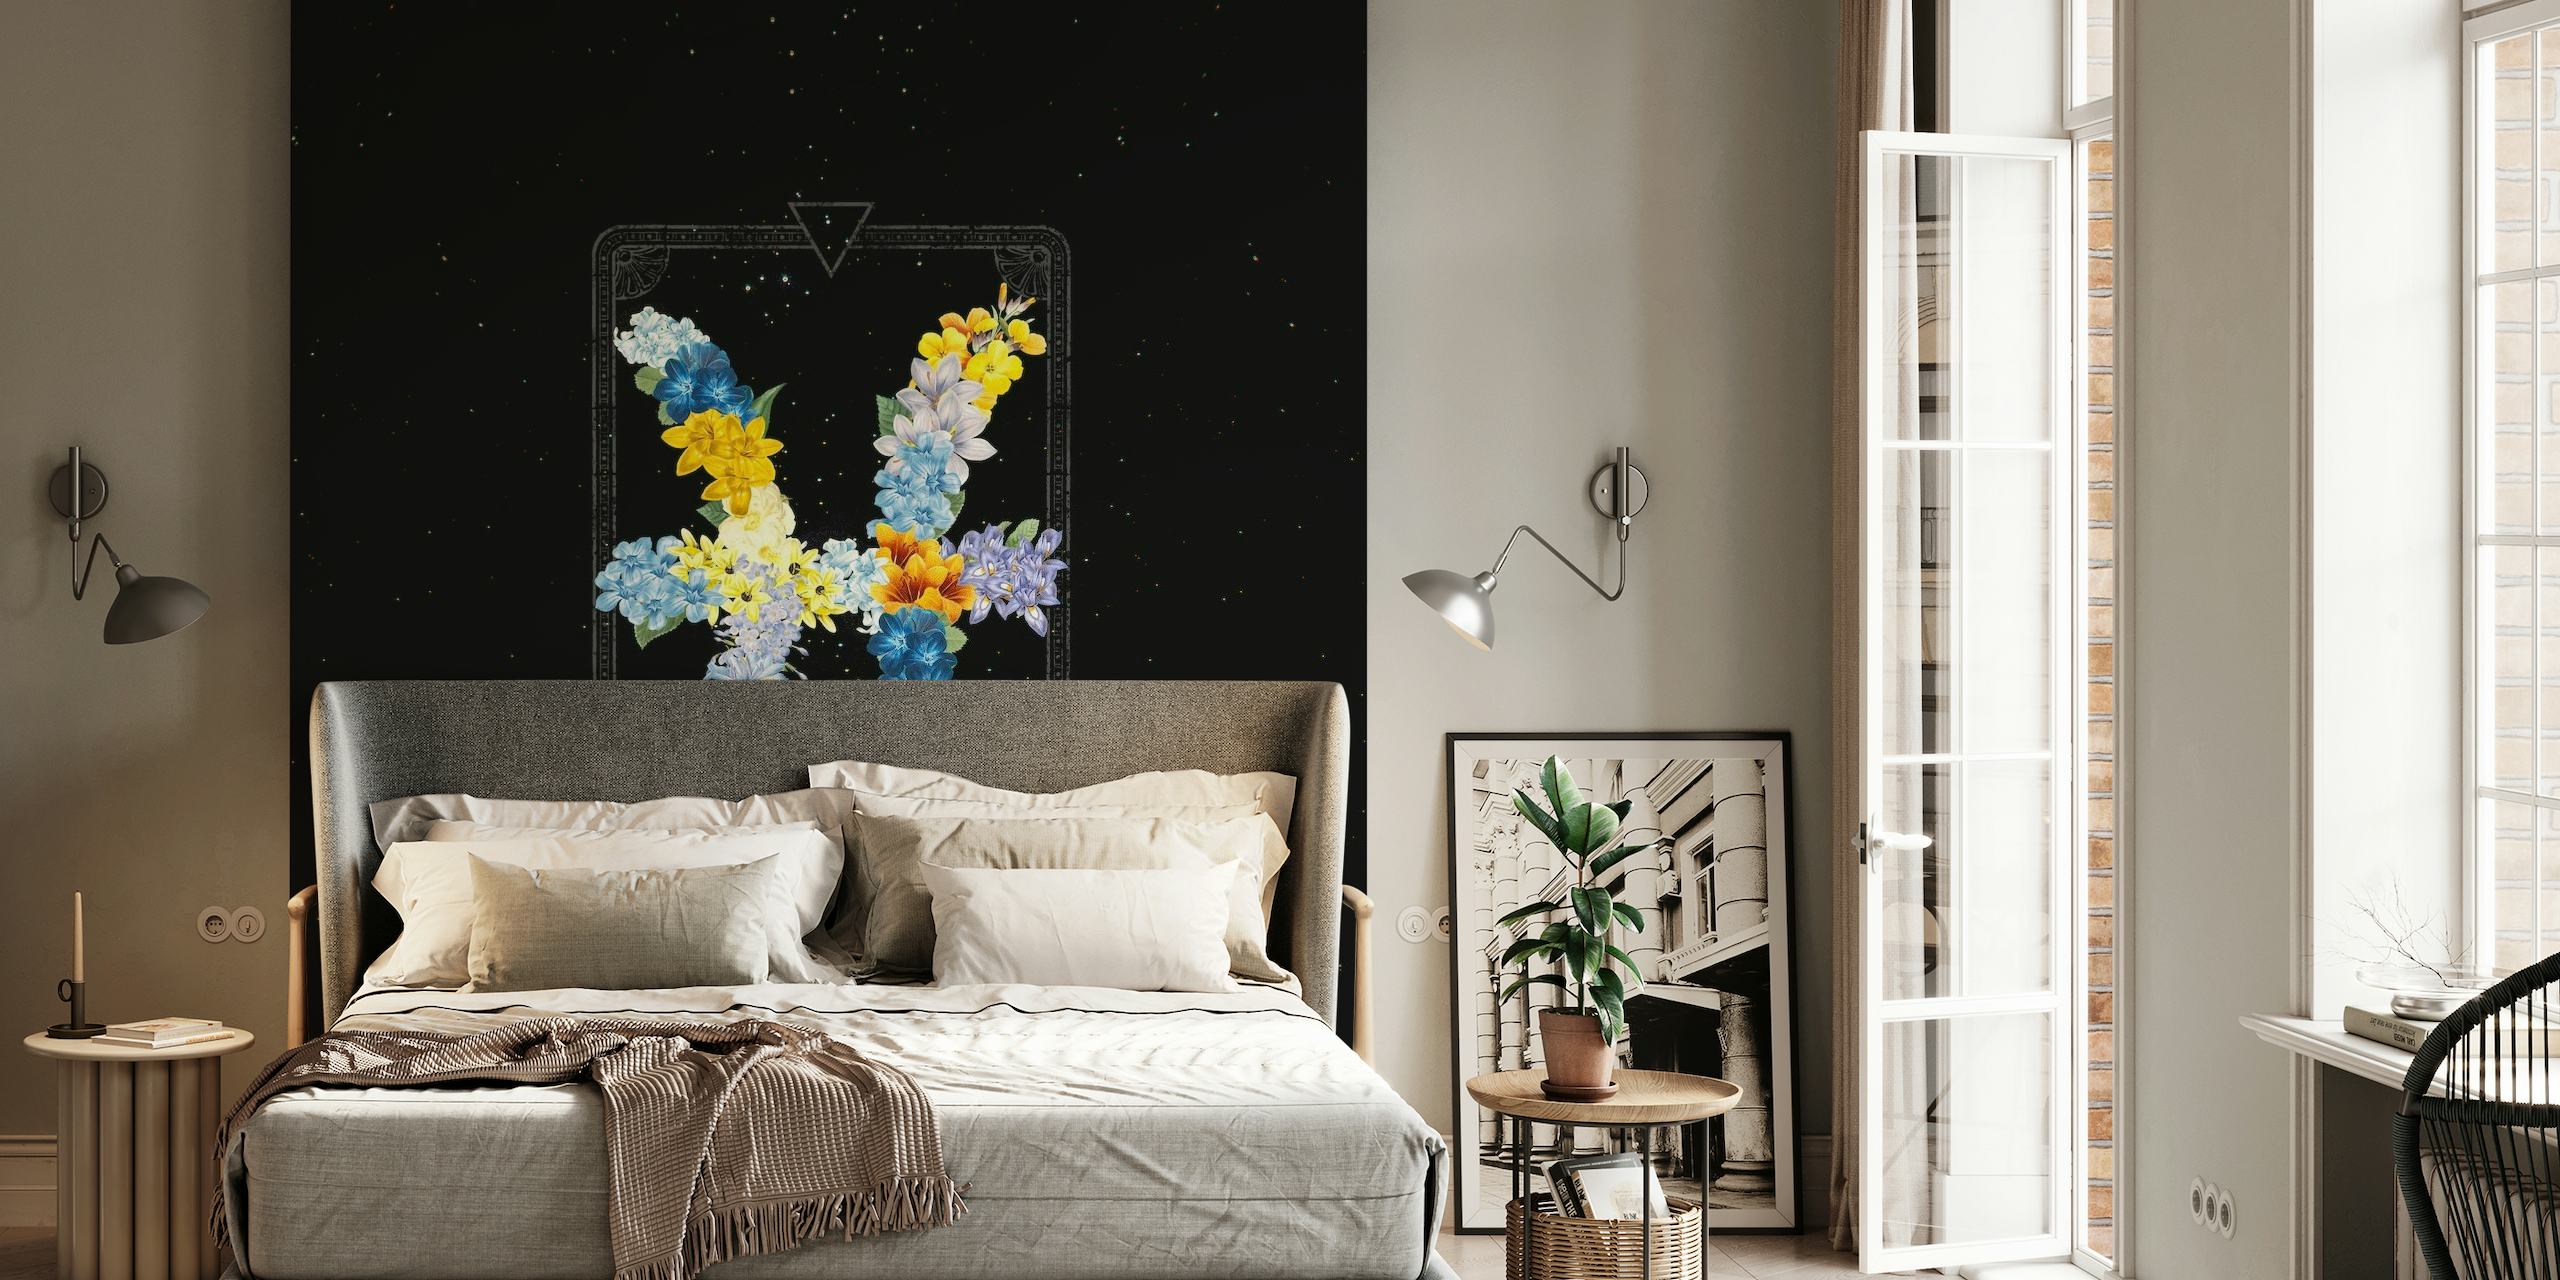 Fototapete mit Blumenmuster des Sternzeichens Fische vor einer sternenklaren Nacht im Hintergrund